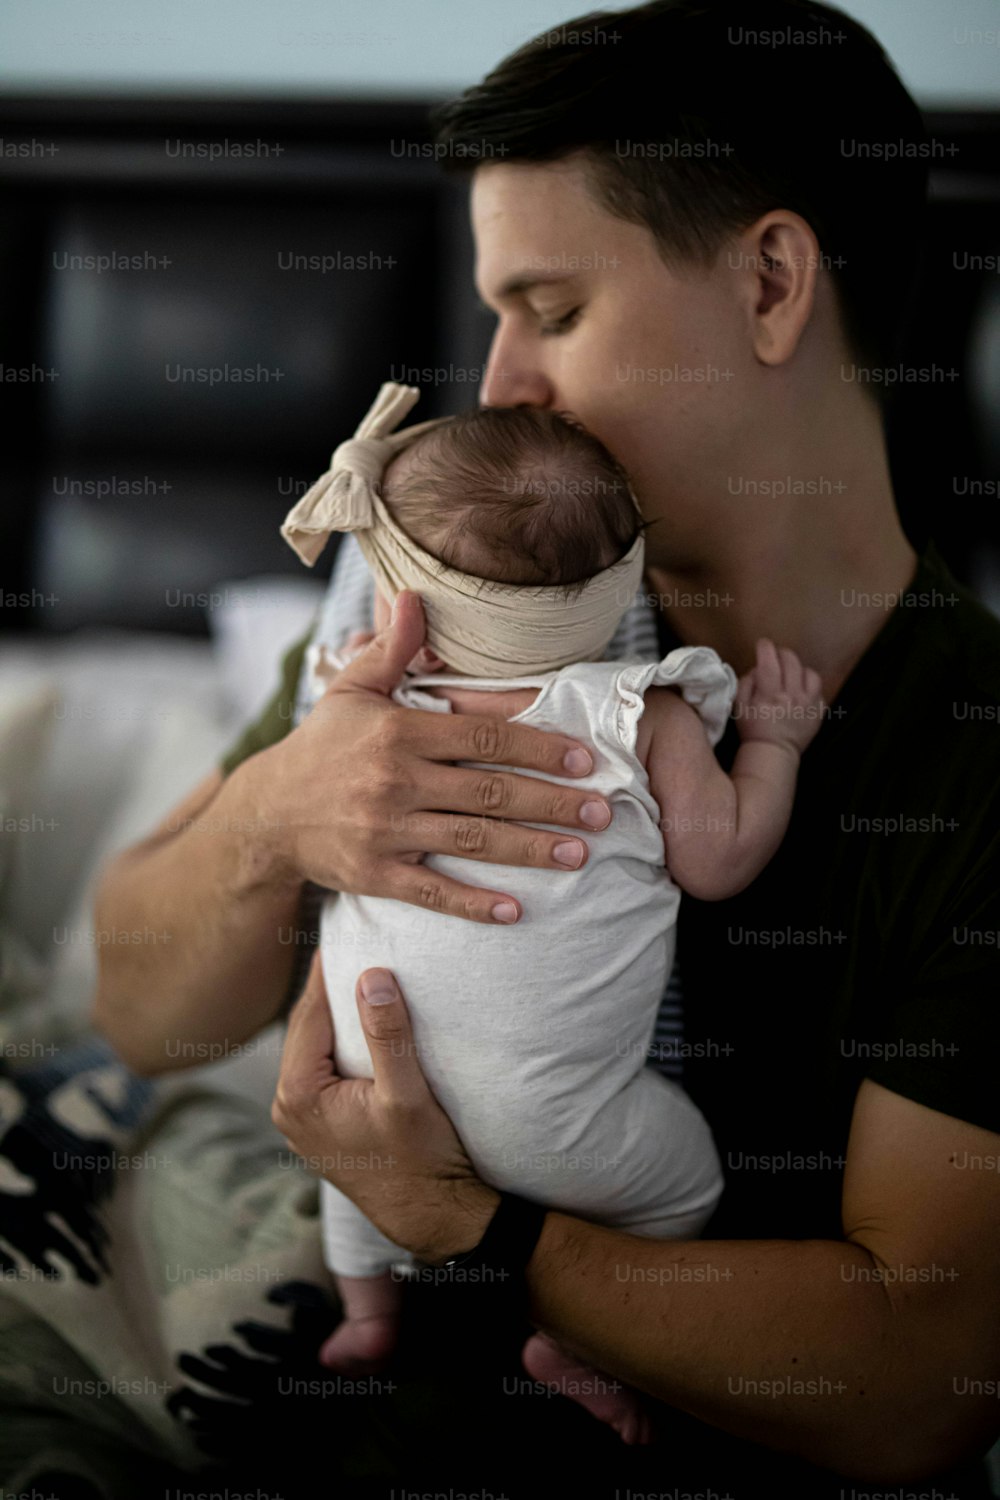 Un homme tenant un bébé dans ses bras